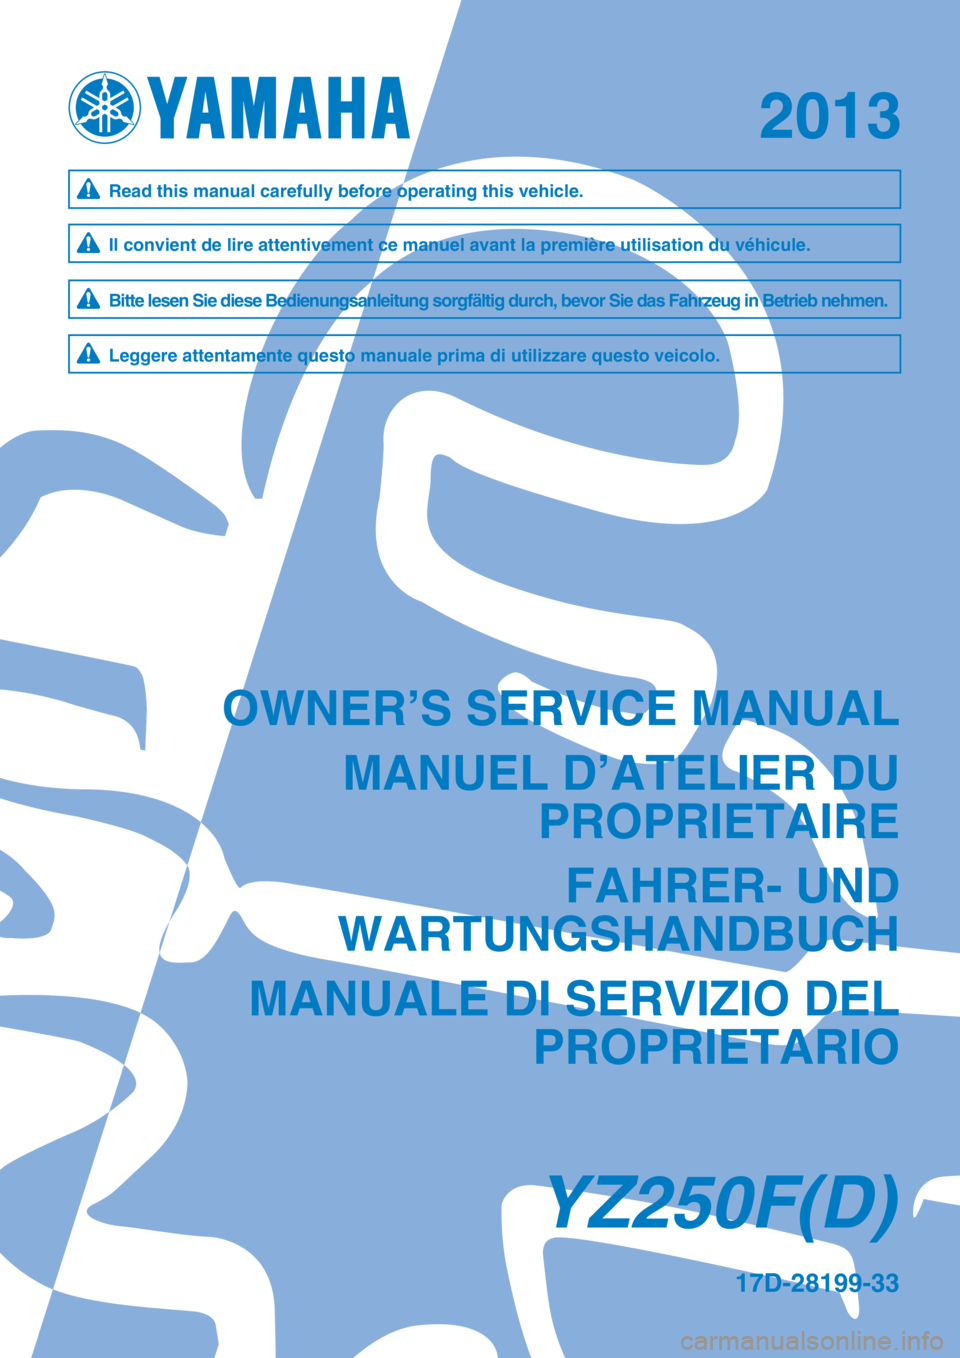 YAMAHA YZ250F 2013  Owners Manual 2013
17D-28199-33
YZ250F(D)
OWNER’S SERVICE MANUALMANUEL D’ATELIER DU PROPRIETAIRE
FAHRER- UND
WARTUNGSHANDBUCH
MANUALE DI SERVIZIO DEL PROPRIETARIO
Il convient de lire attentivement ce manuel ava